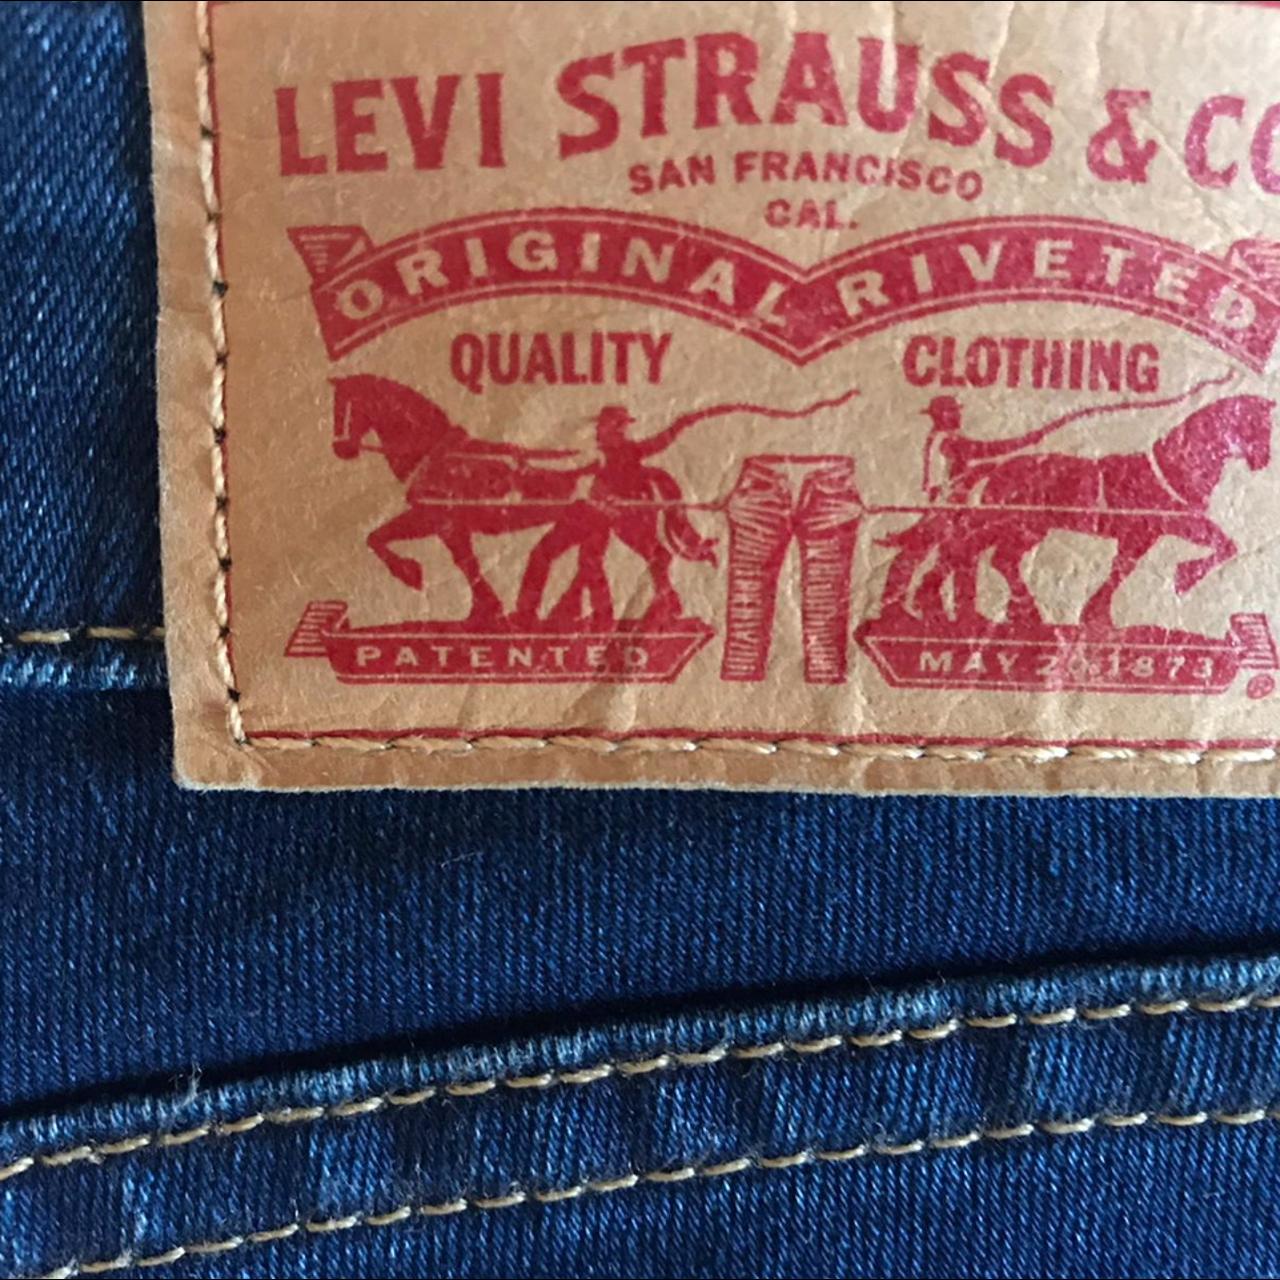 Excellent condition Levis 711 skinny jeans W26 L32... - Depop